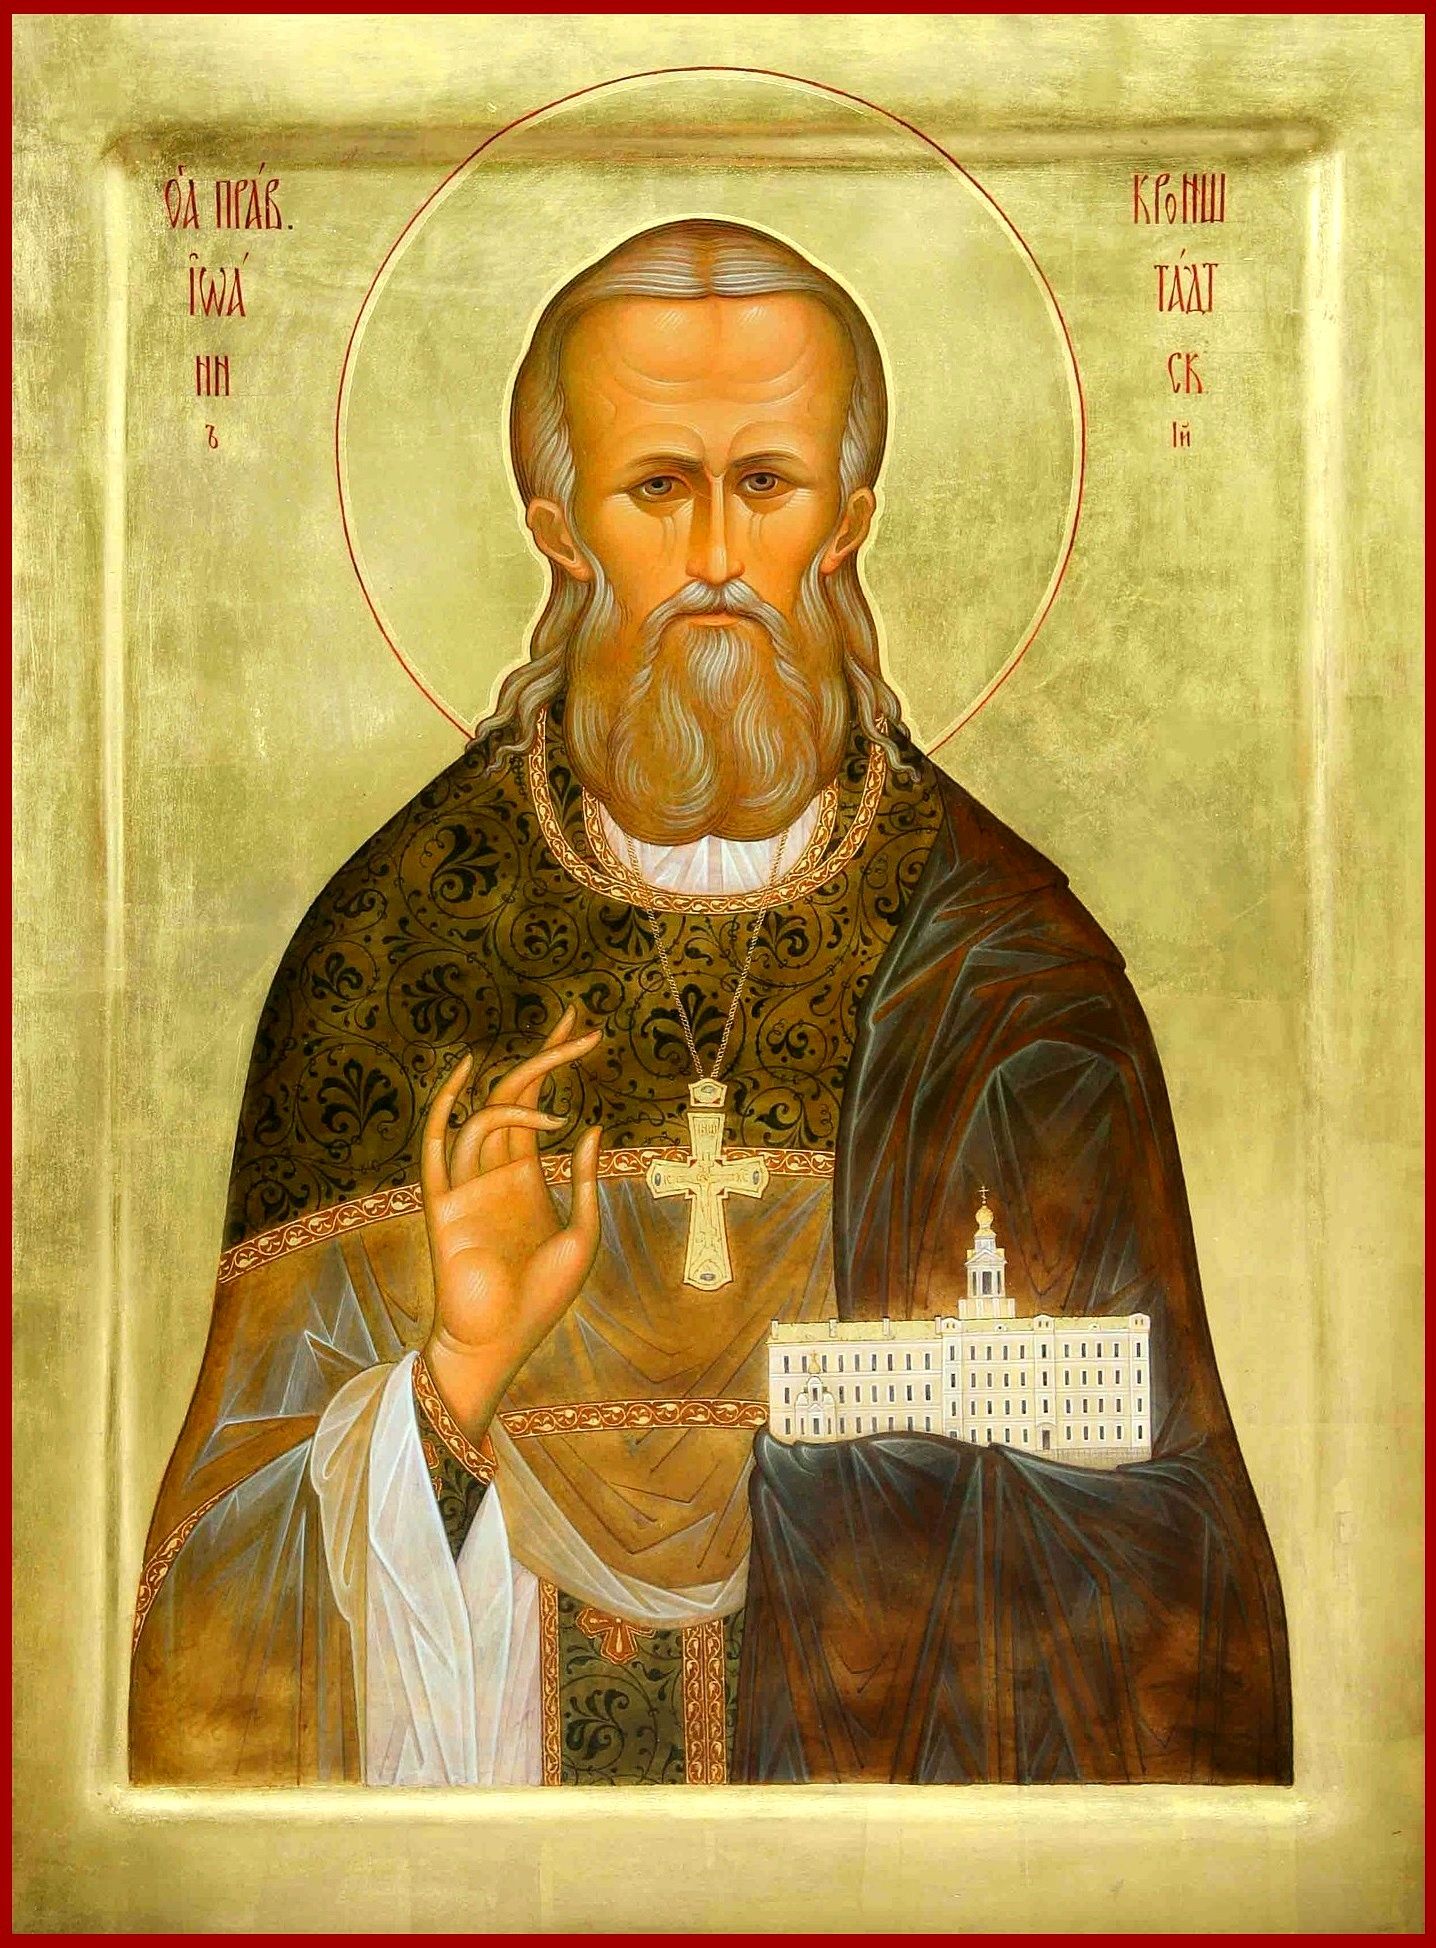 Saint John of Kronstadt on the Nativity of the Theotokos